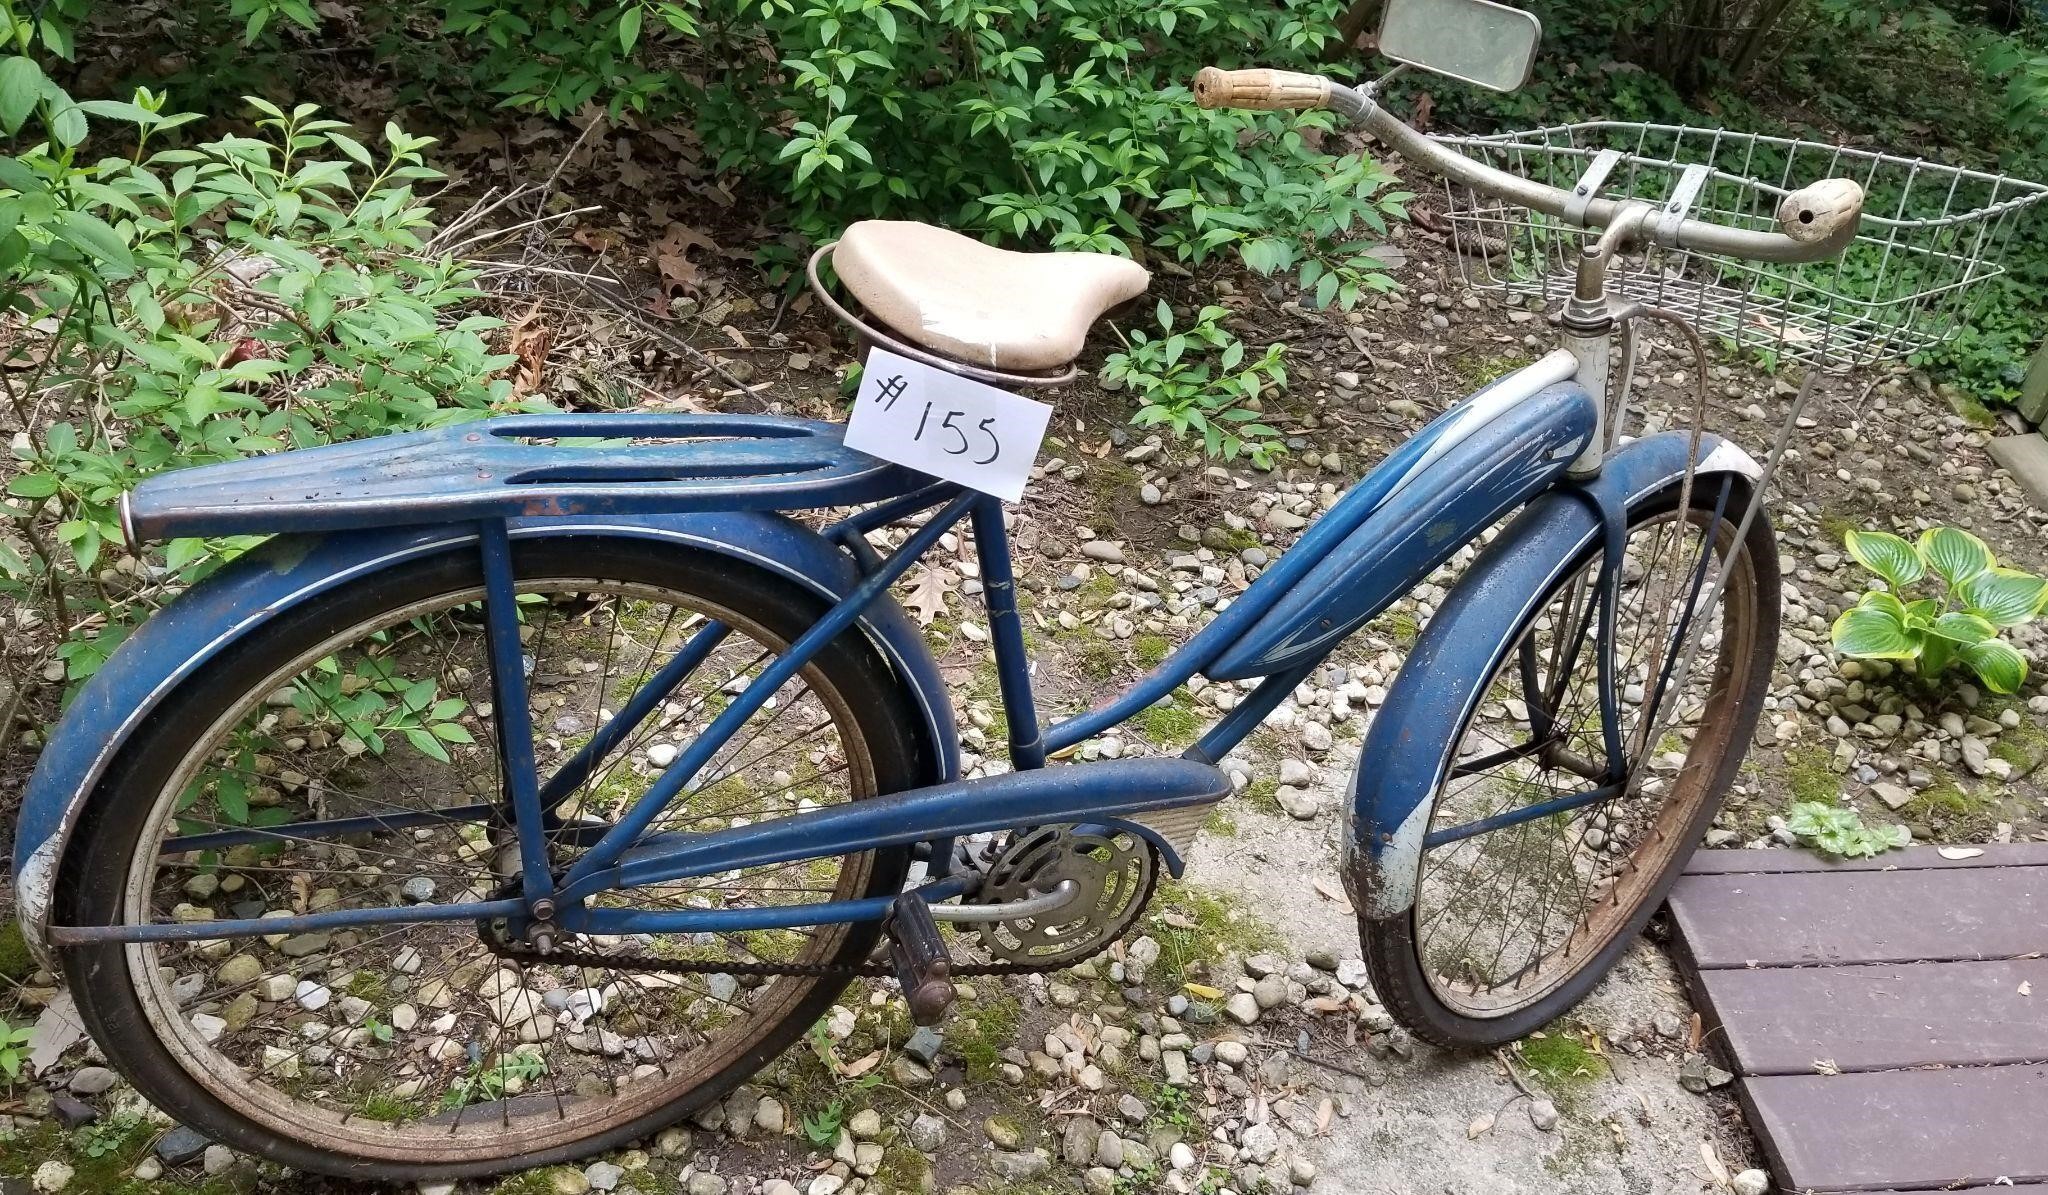 Antique Mercury Bike